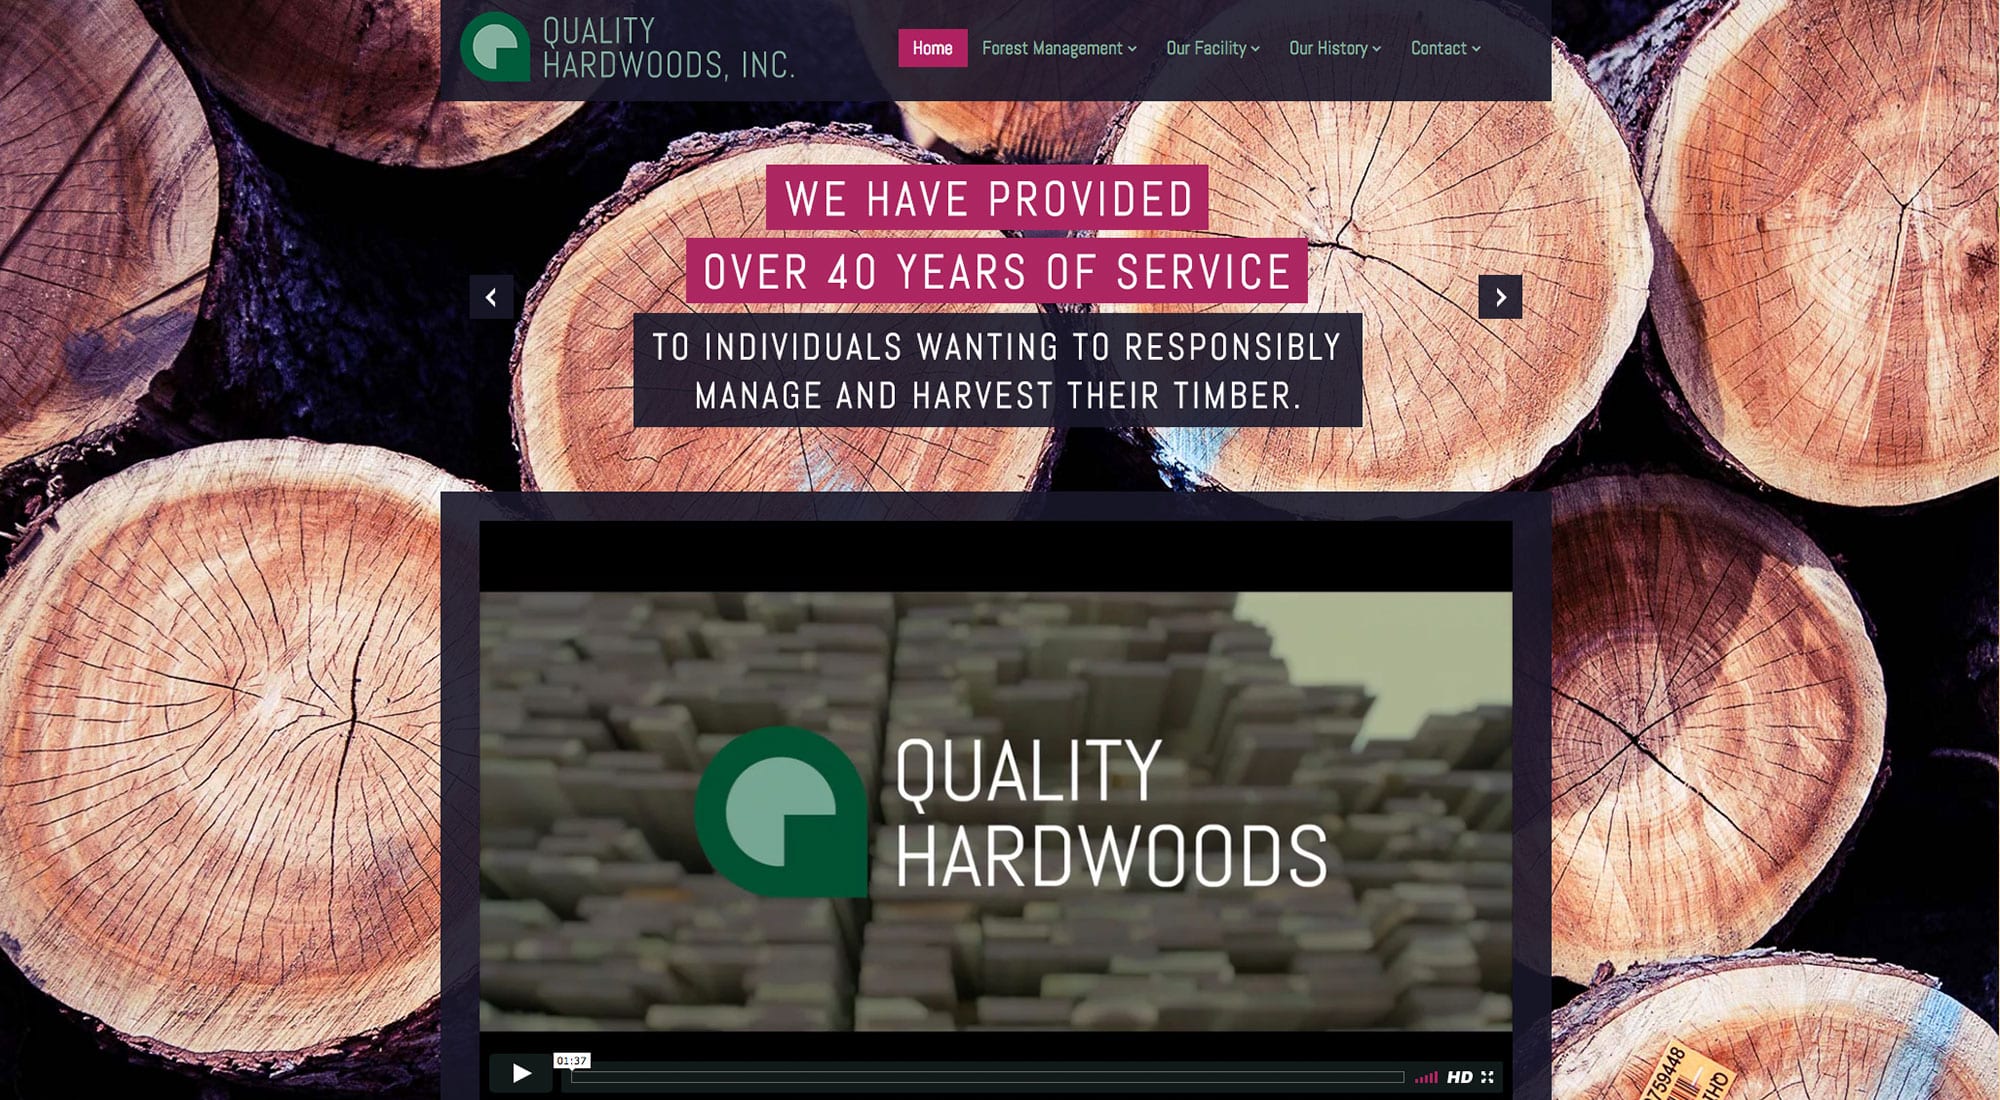 Quality Hardwoods